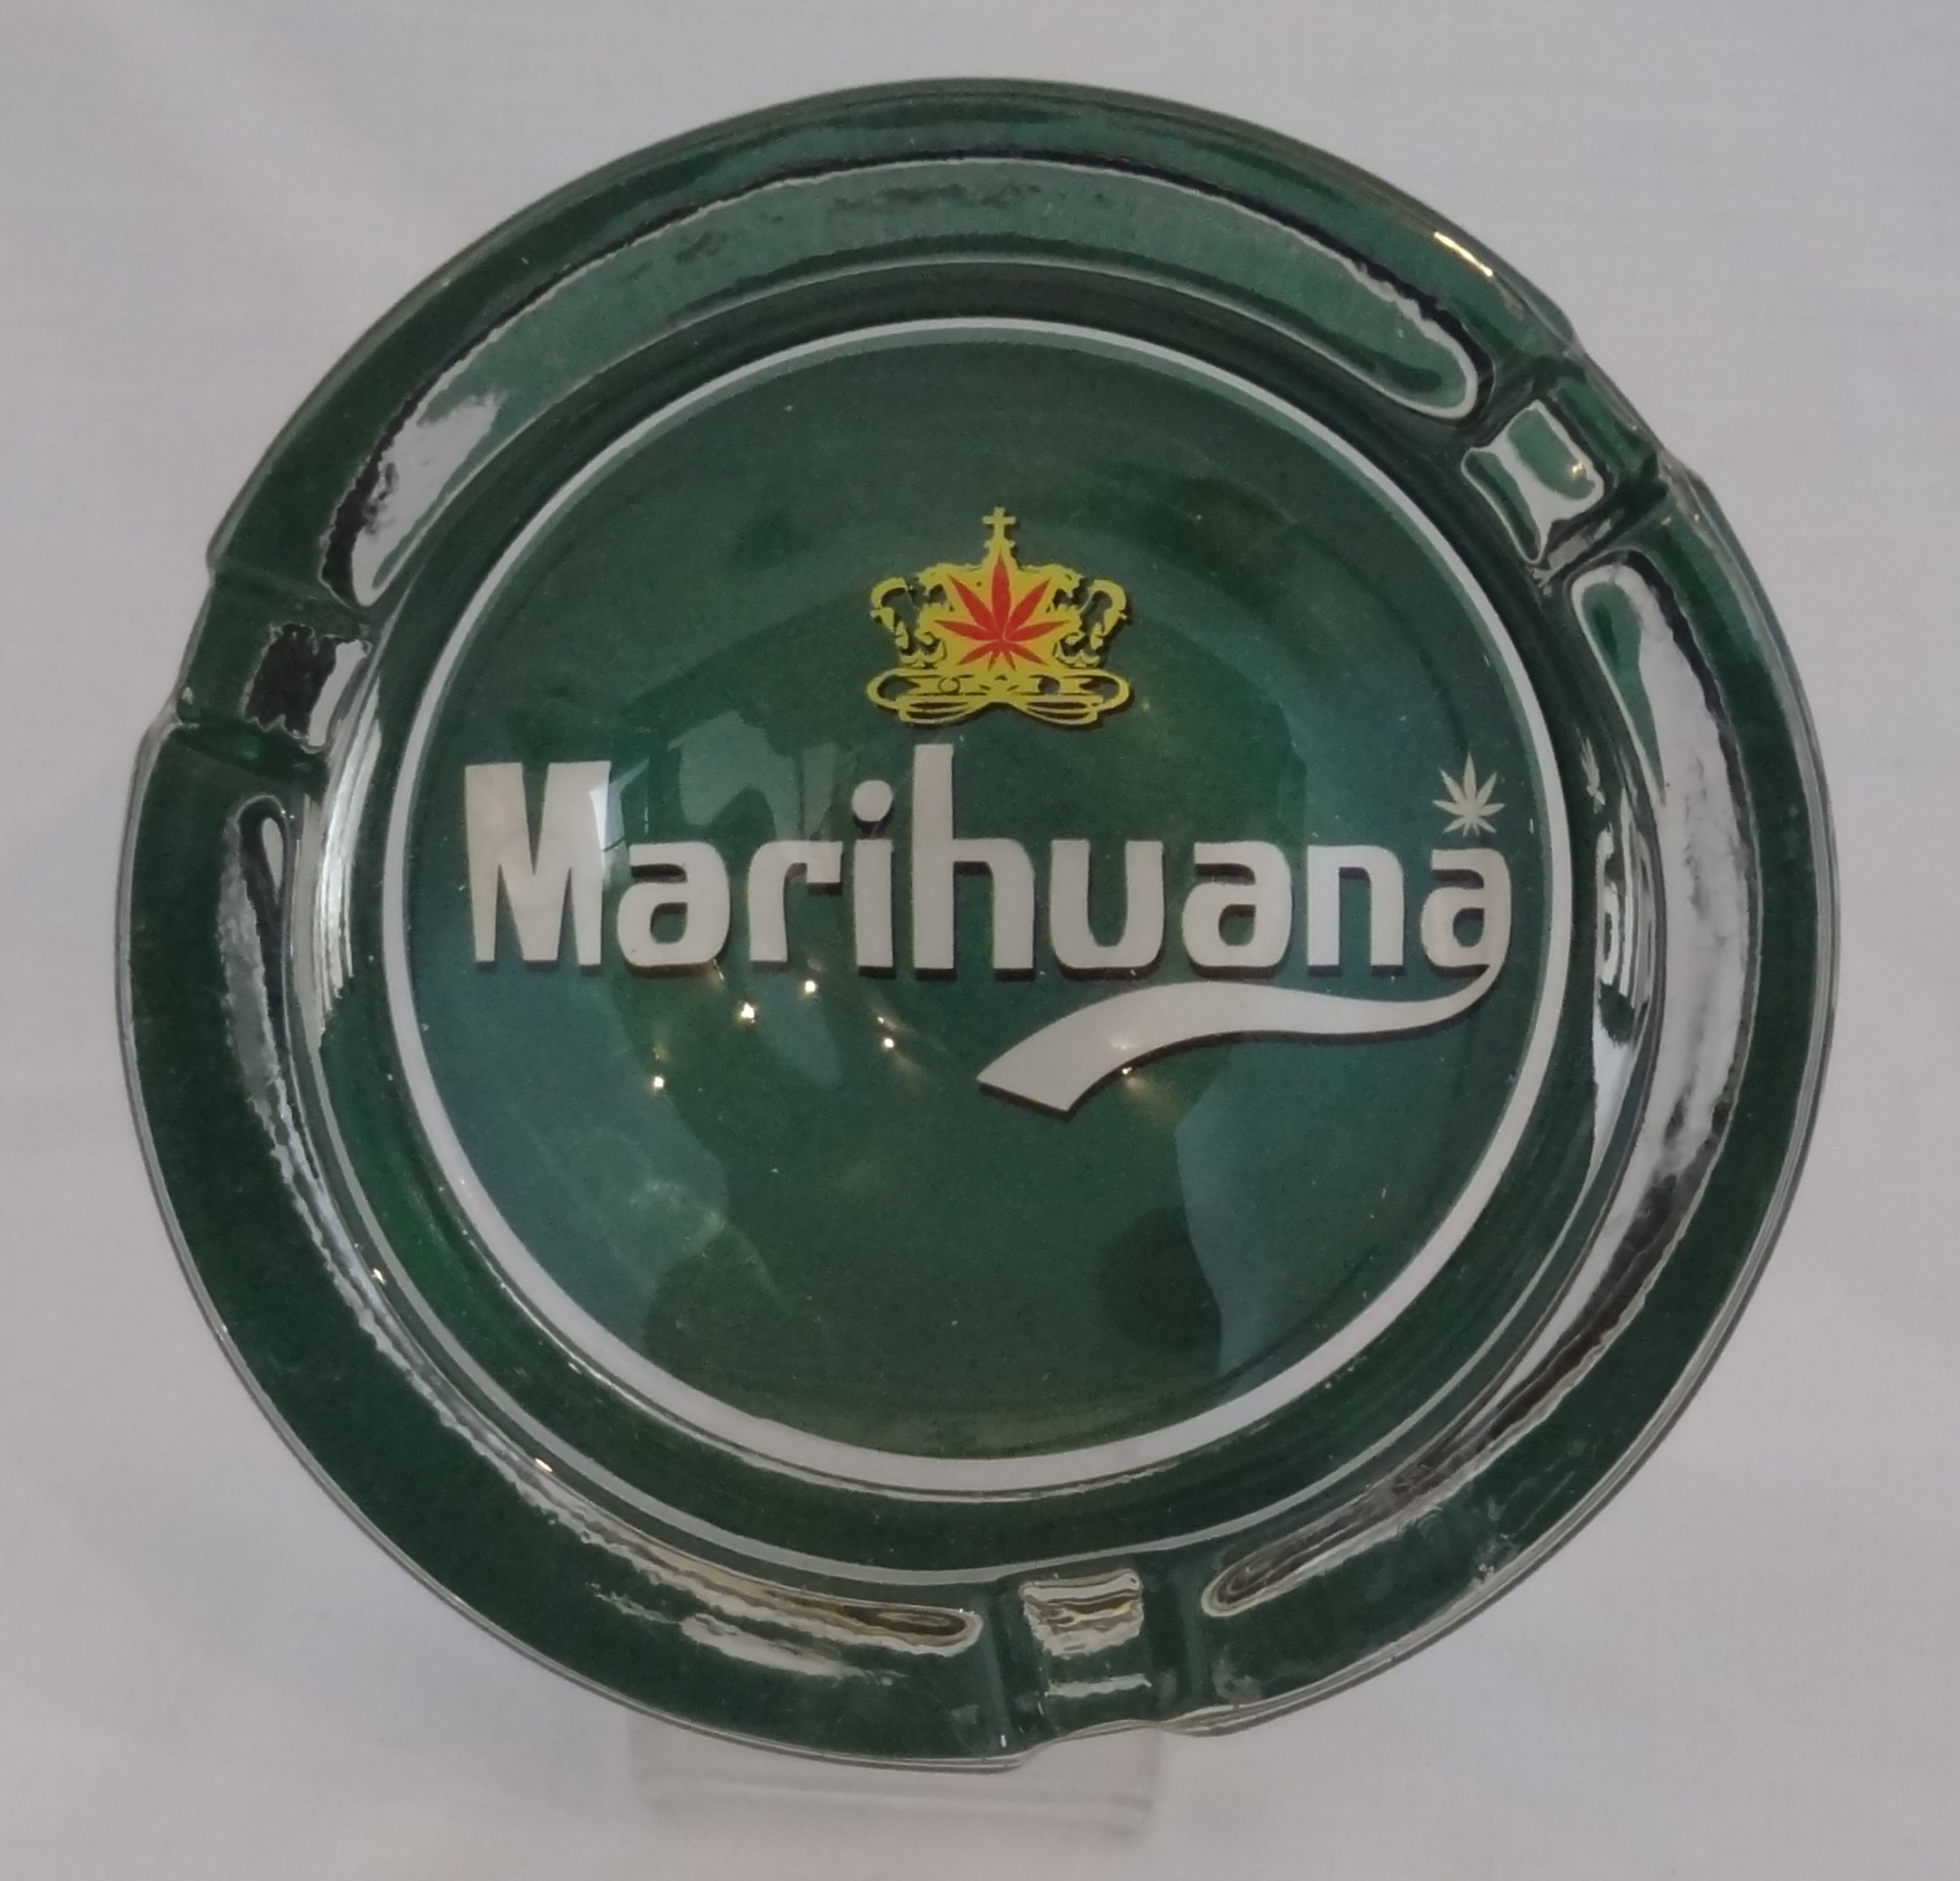 Small Round ASHTRAY - marihuana green